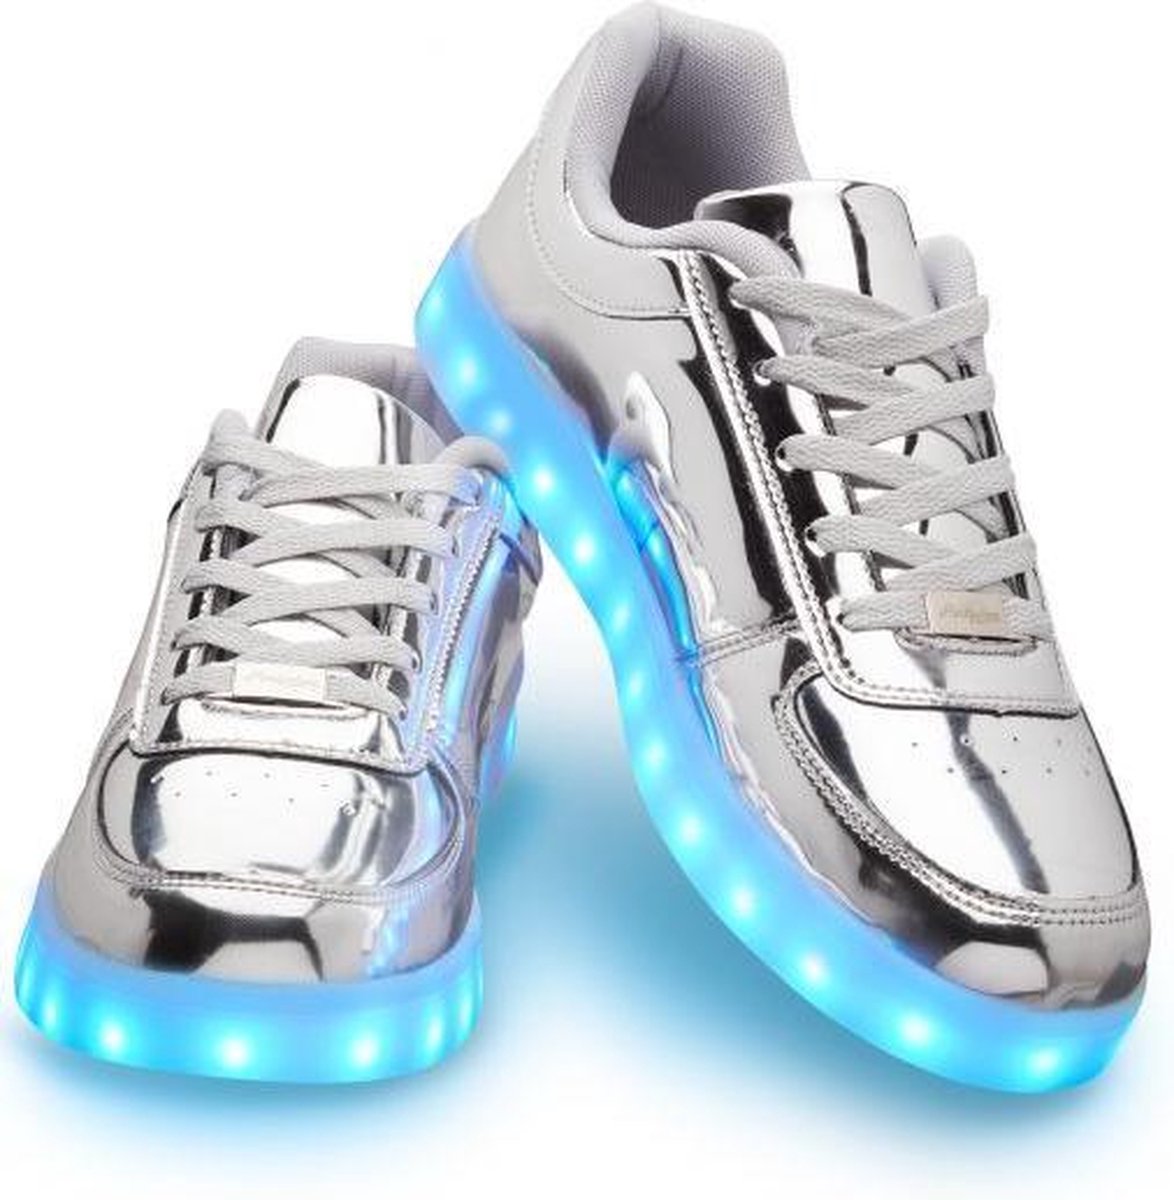 Schoenen met lichtjes - Lichtgevende led schoenen - Zilver - Maat 43